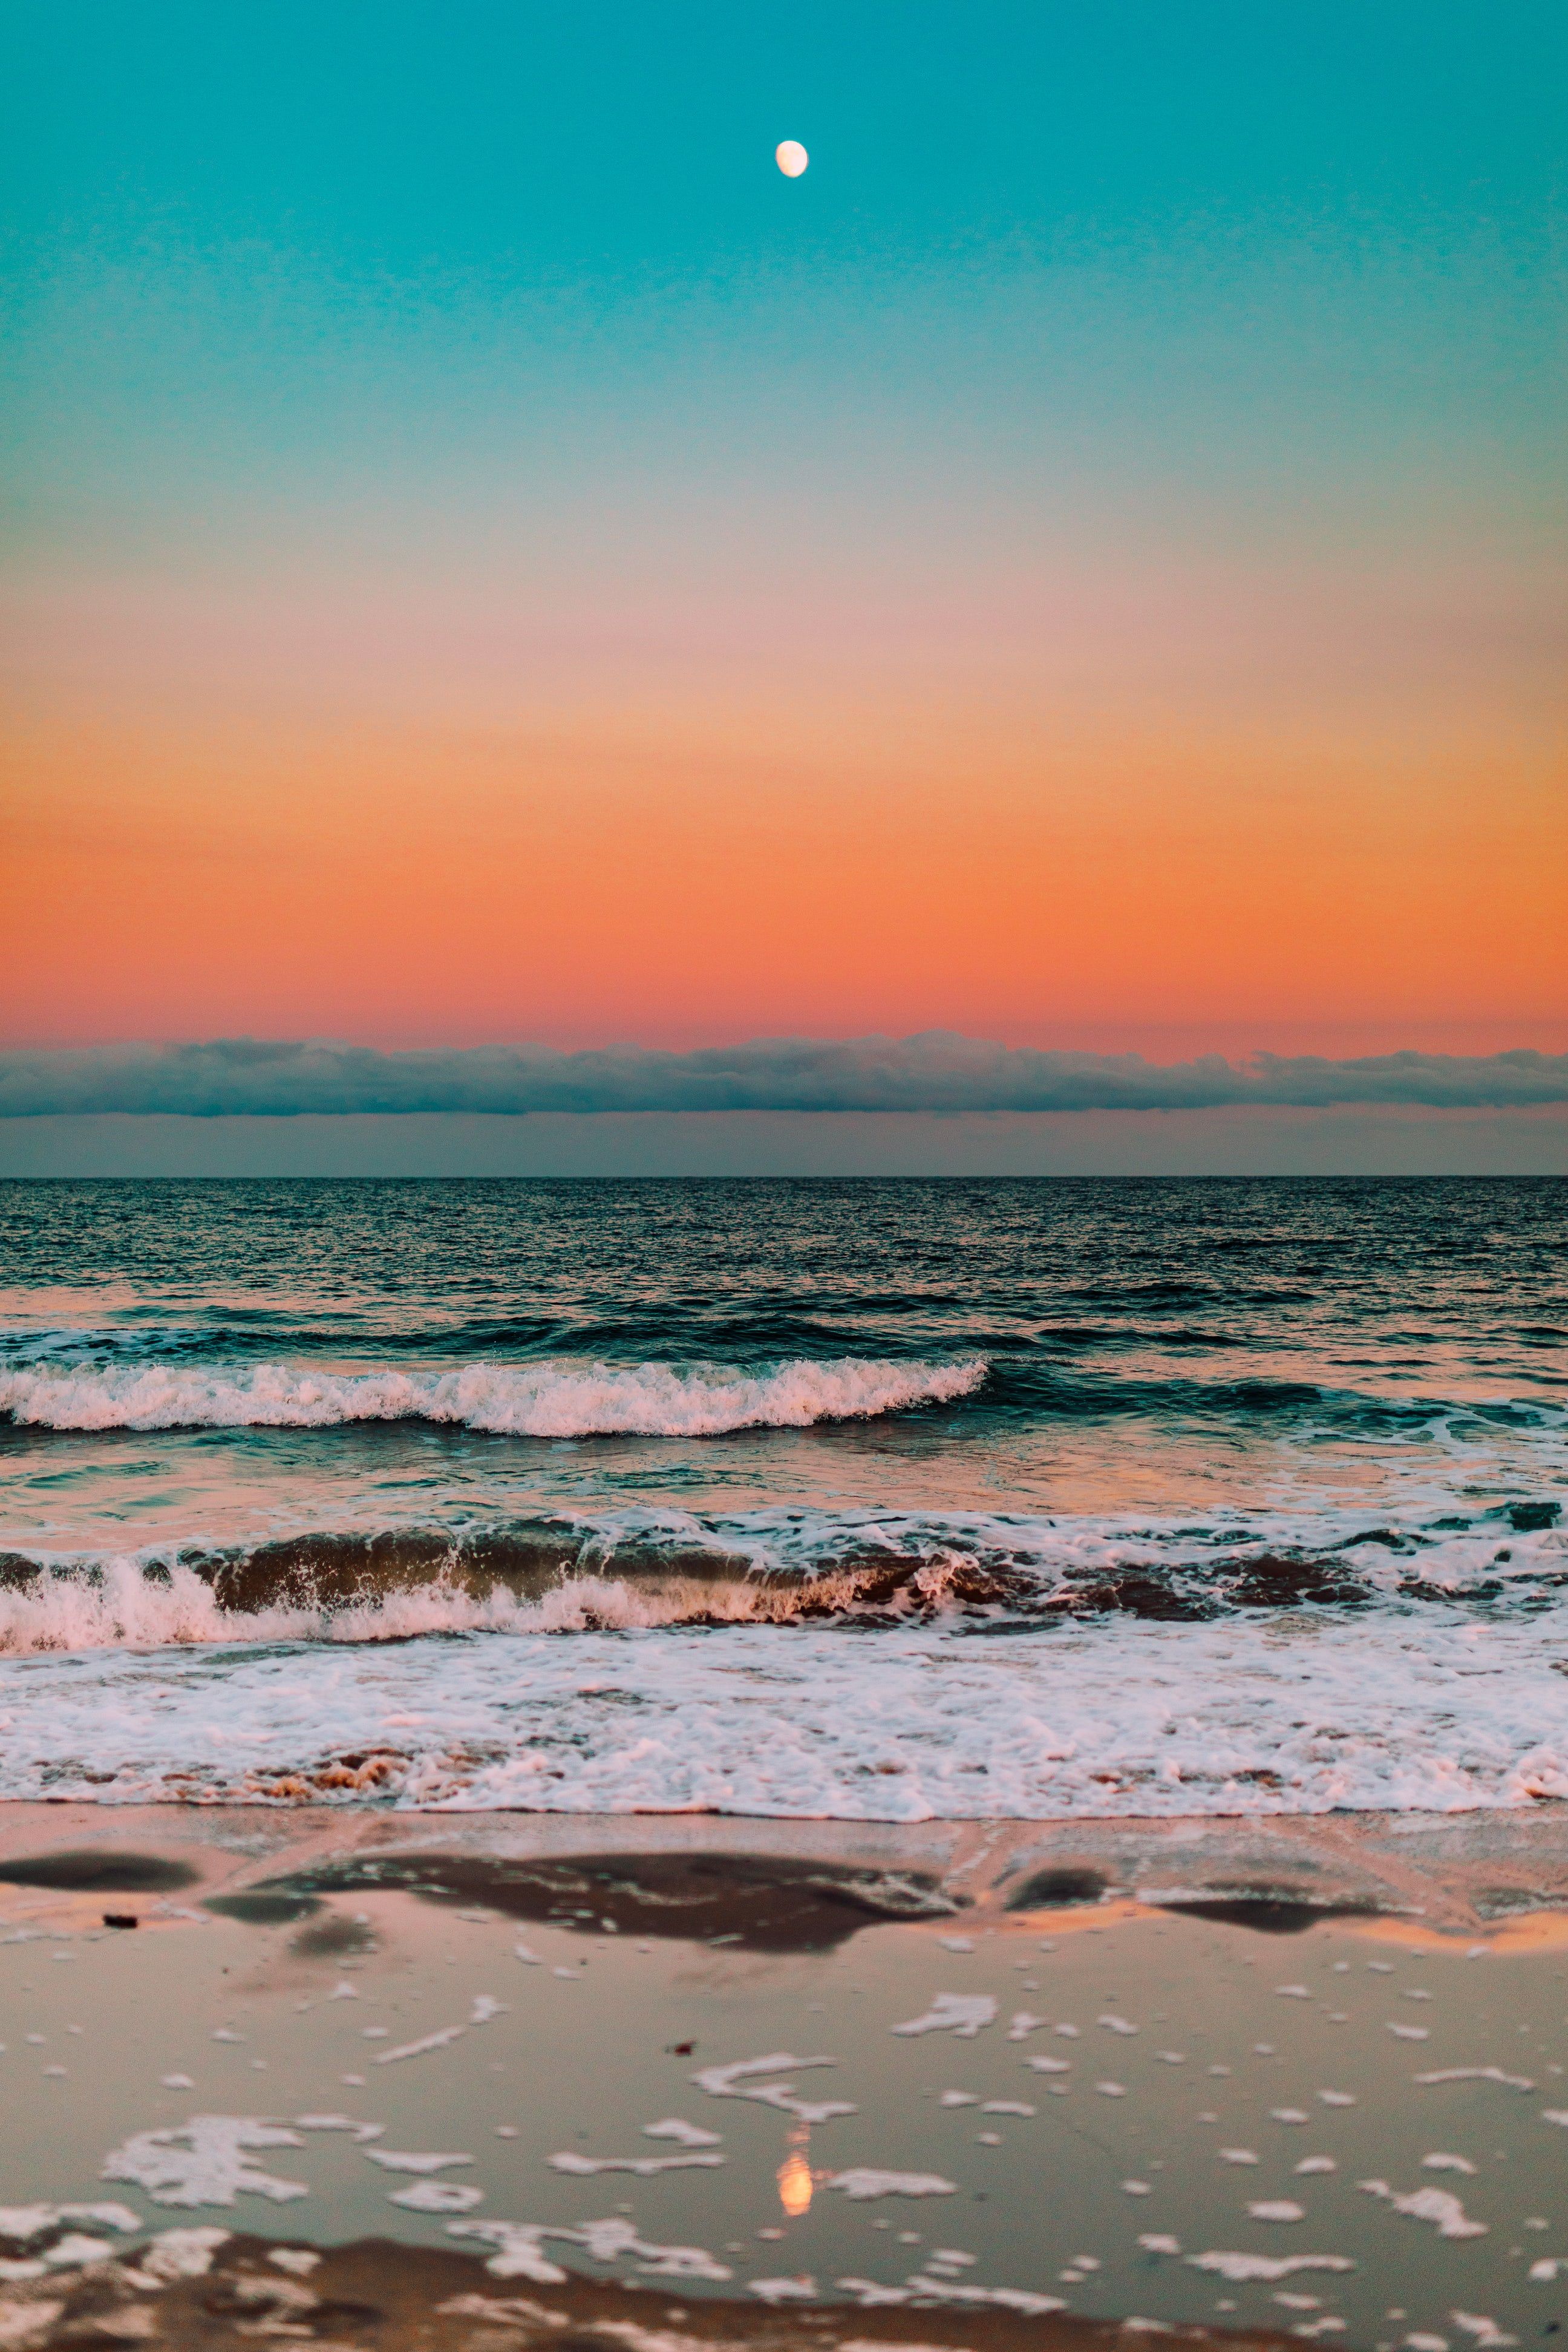 Hình nền sóng biển: Sóng biển là điều tuyệt vời nhất của thiên nhiên mang lại cho chúng ta sự tĩnh lặng và an yên. Hãy ngắm nhìn hình nền sóng biển đầy màu sắc này và cảm nhận tràn ngập cảm xúc trong từng giây phút. 